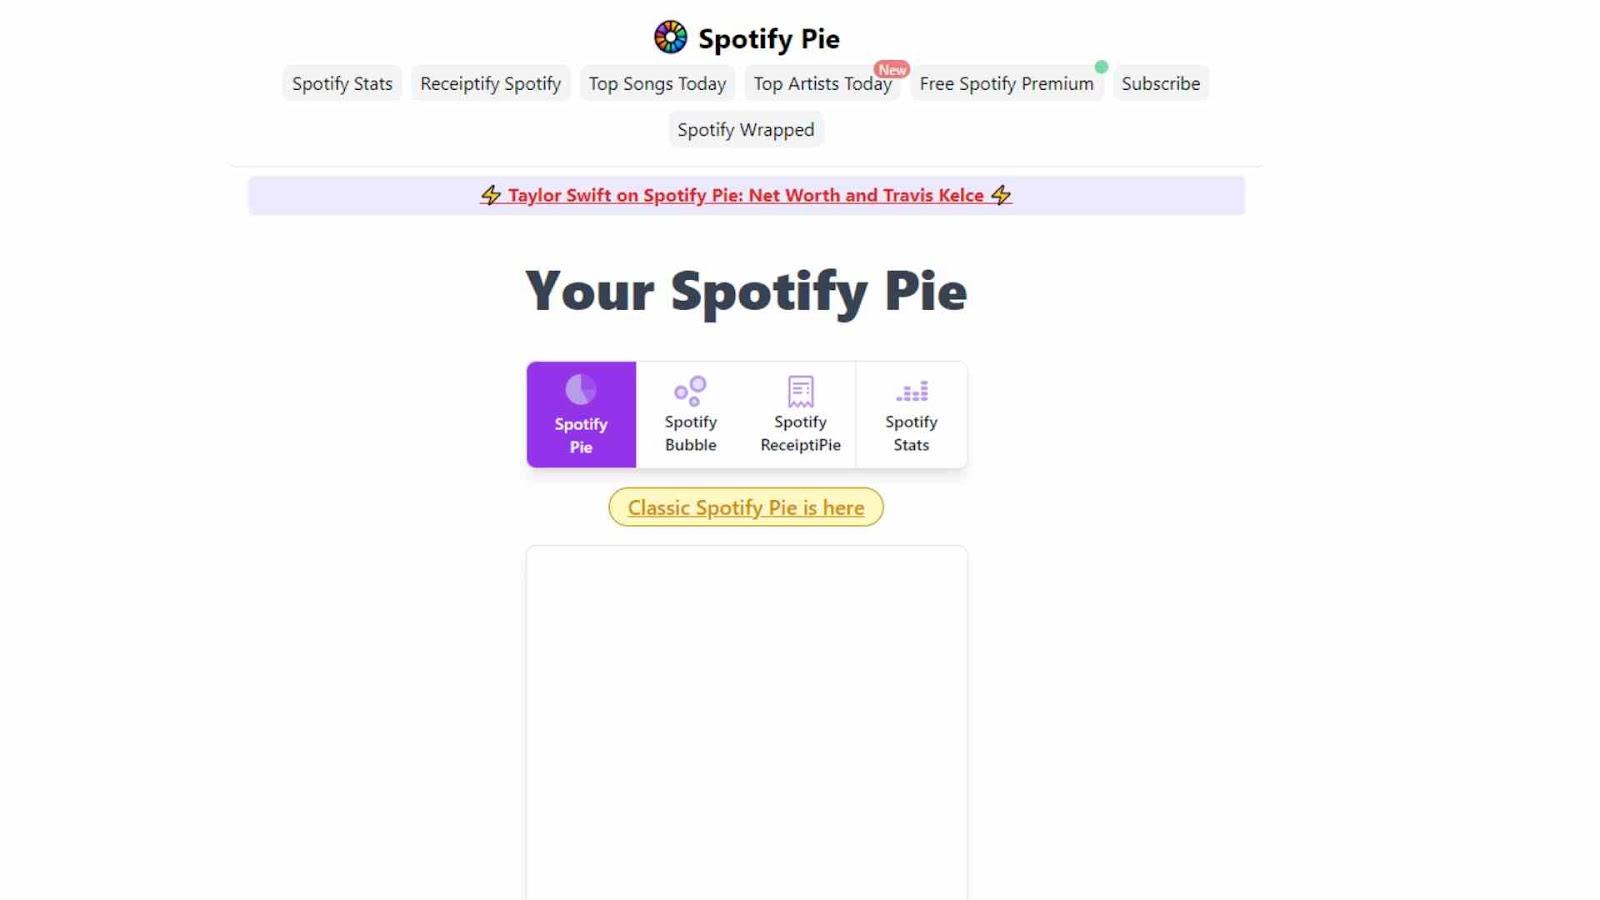 How Do I Do the Spotify Pie?